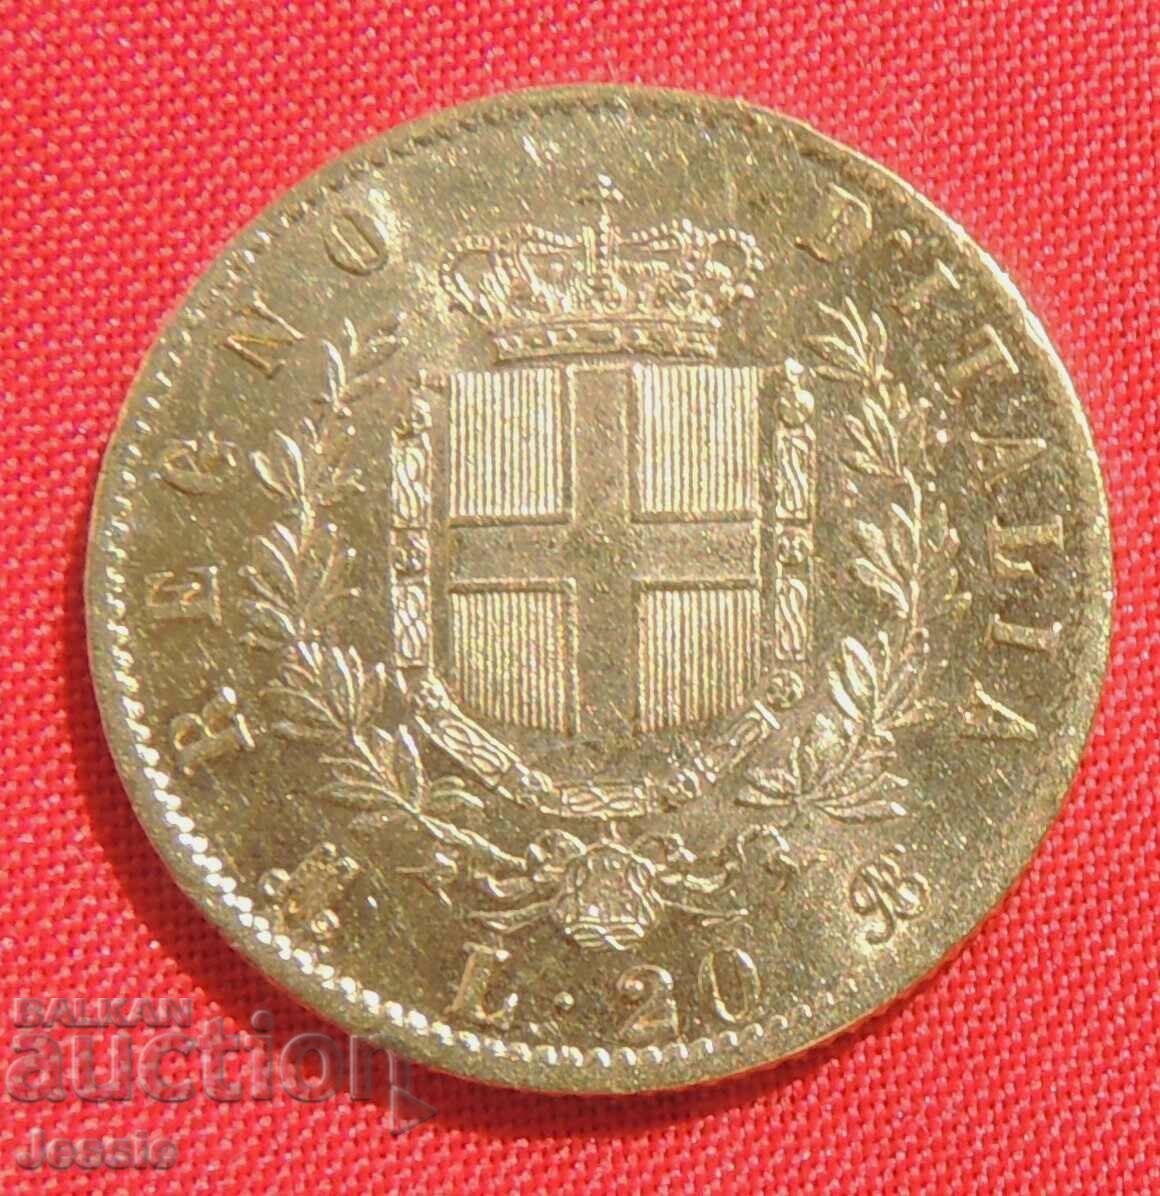 20 Lire 1873 Italy ( 20 лири Италия ) (злато )